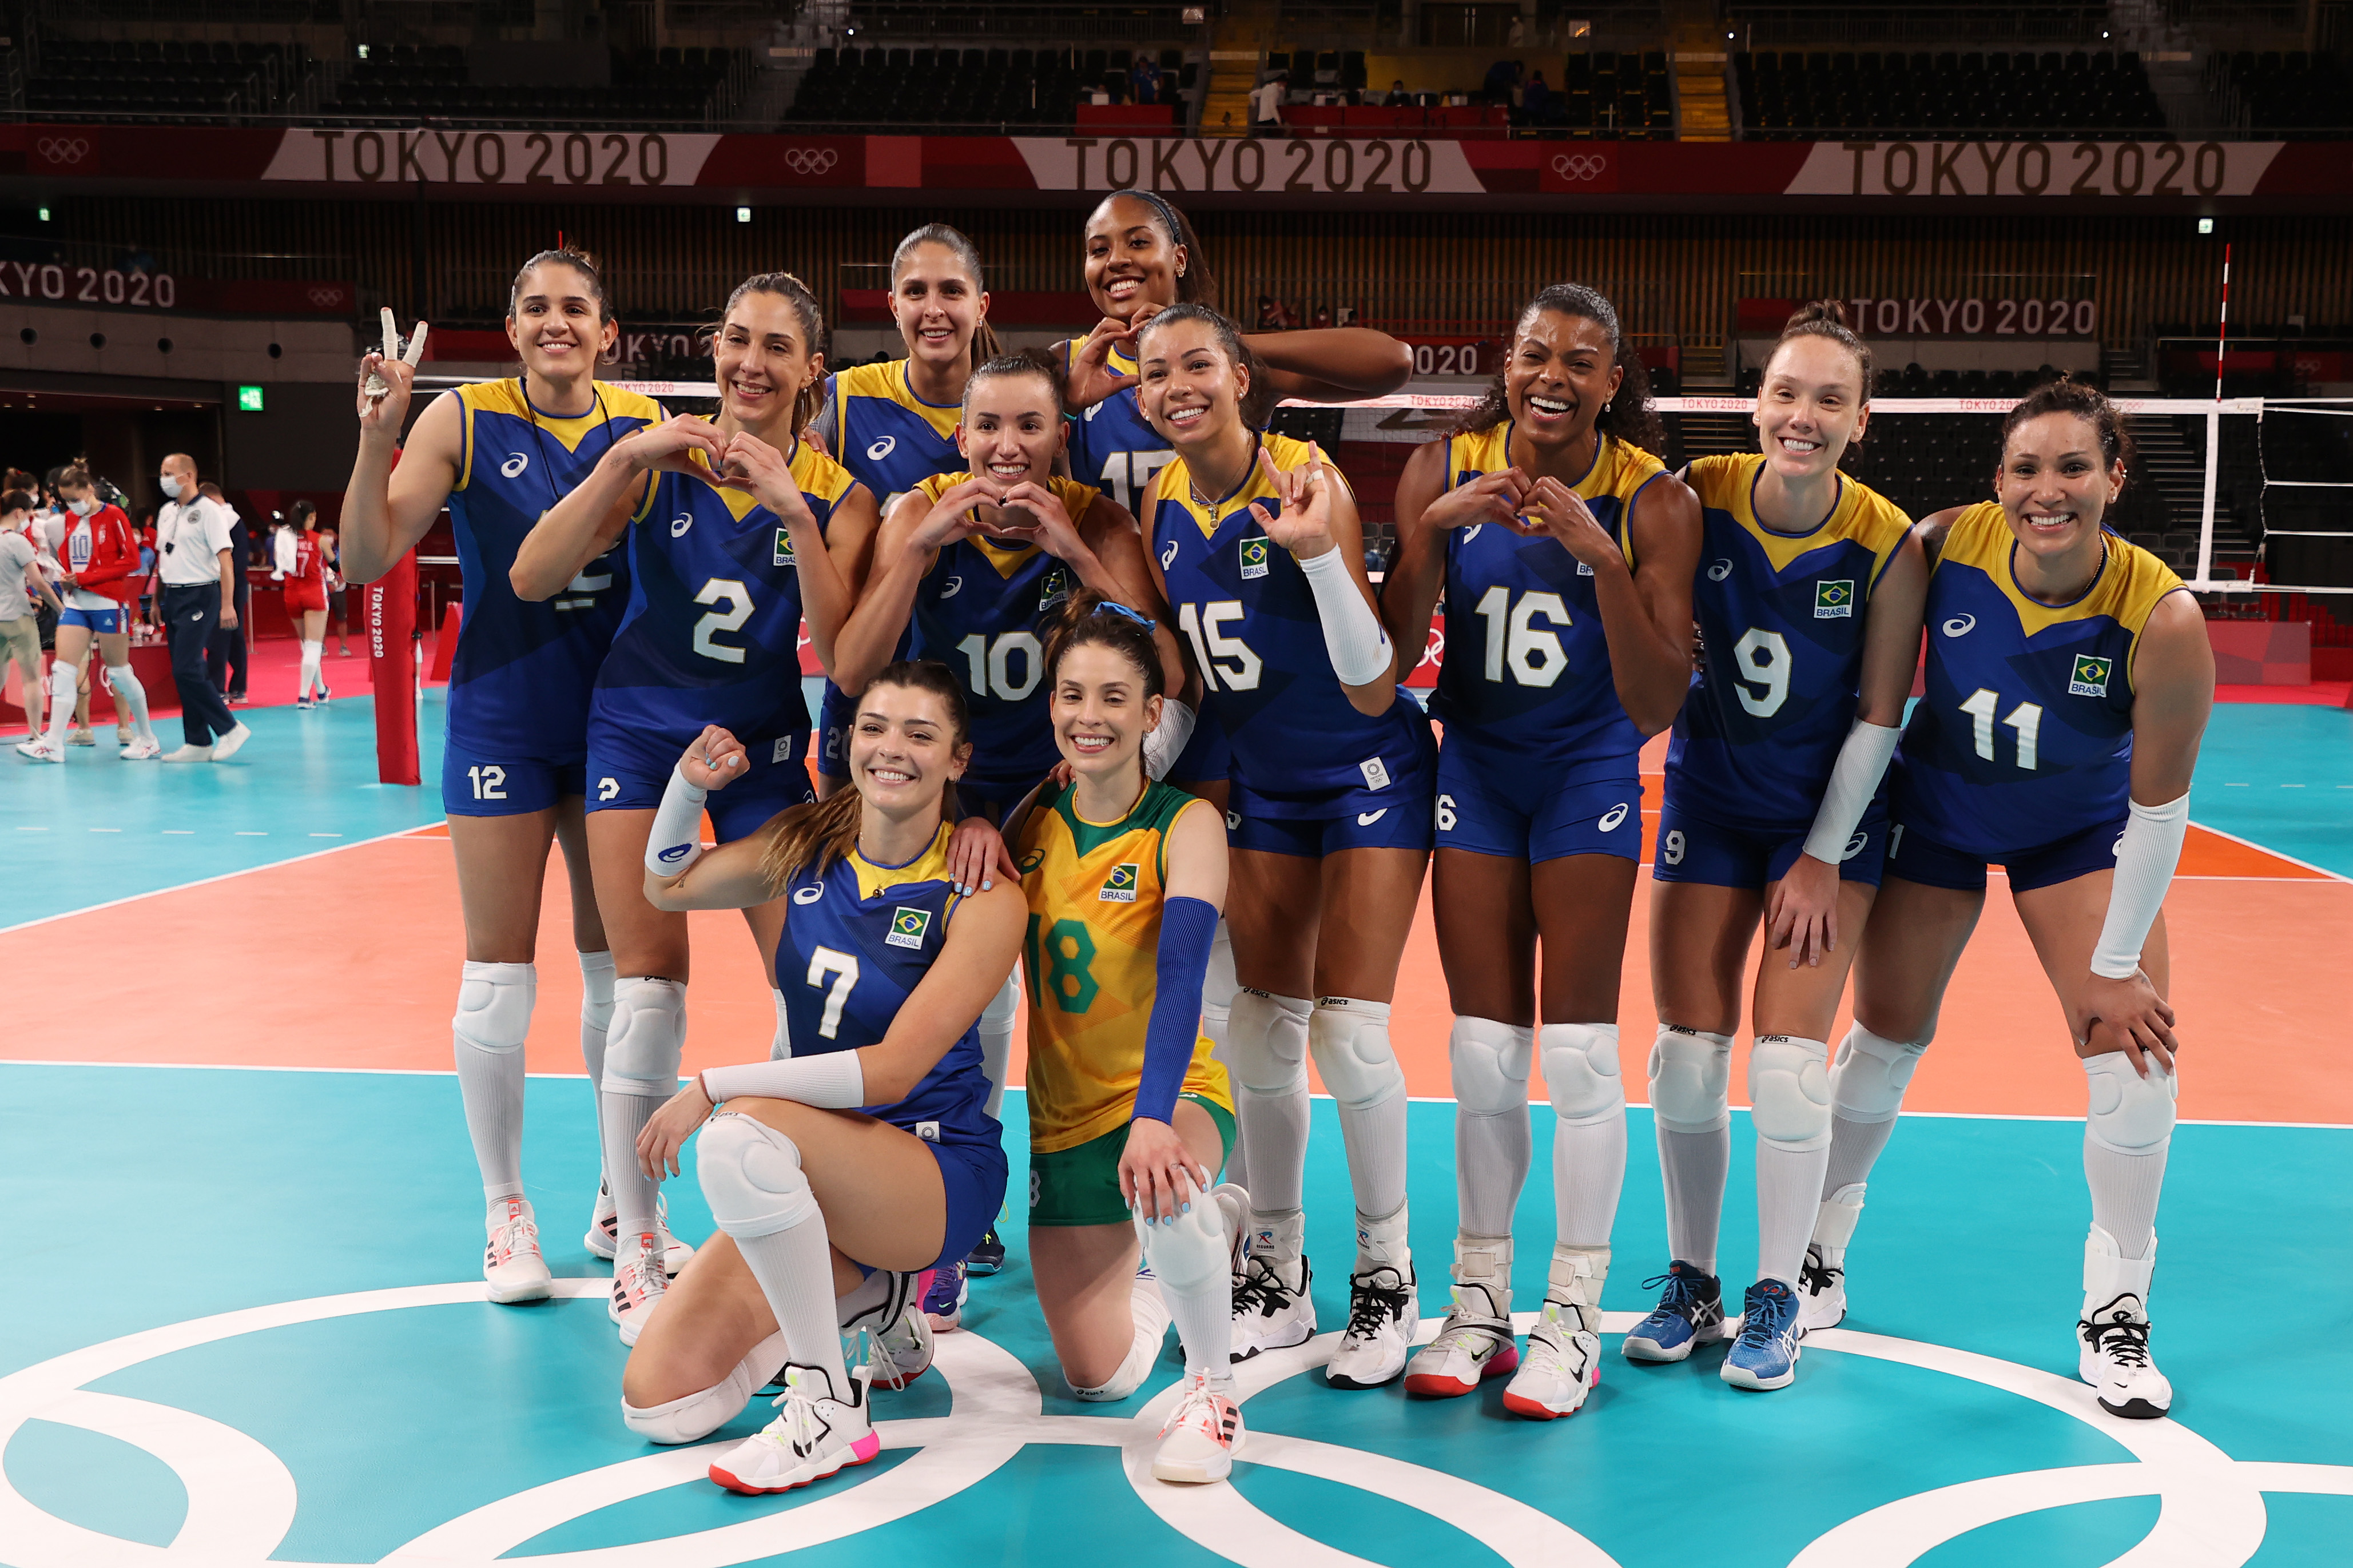 Tristeza Esporte Clube: Seleção feminina de vôlei conquista o ouro